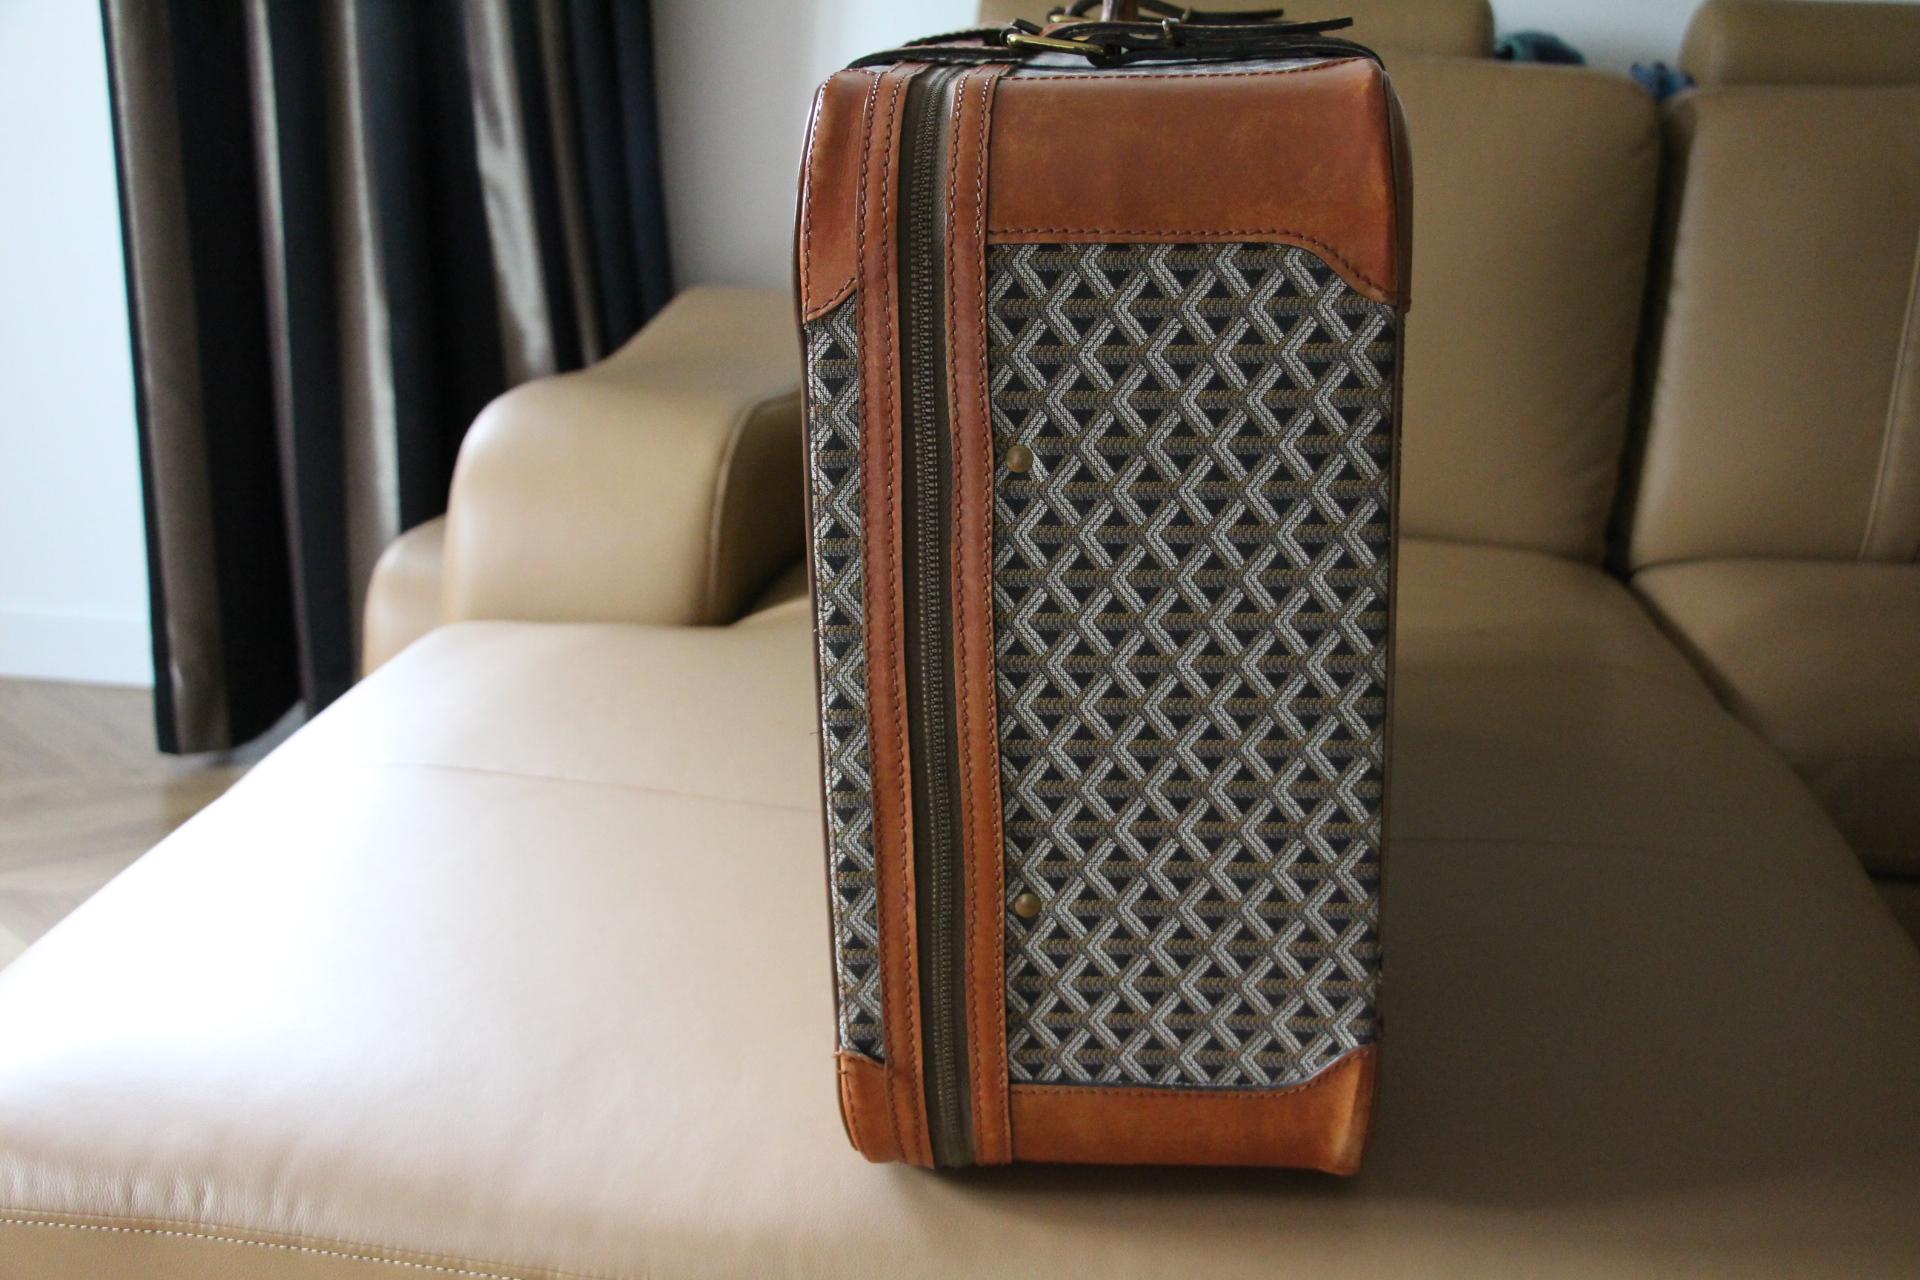 Cette magnifique valise Goyard est réalisée en toile tissée et en cuir couleur miel. Sa poignée robuste et confortable est en cuir noir. Sa serrure est en laiton brossé.
Tout autour, il s'ouvre grâce à sa fermeture à glissière, mais celle-ci est un